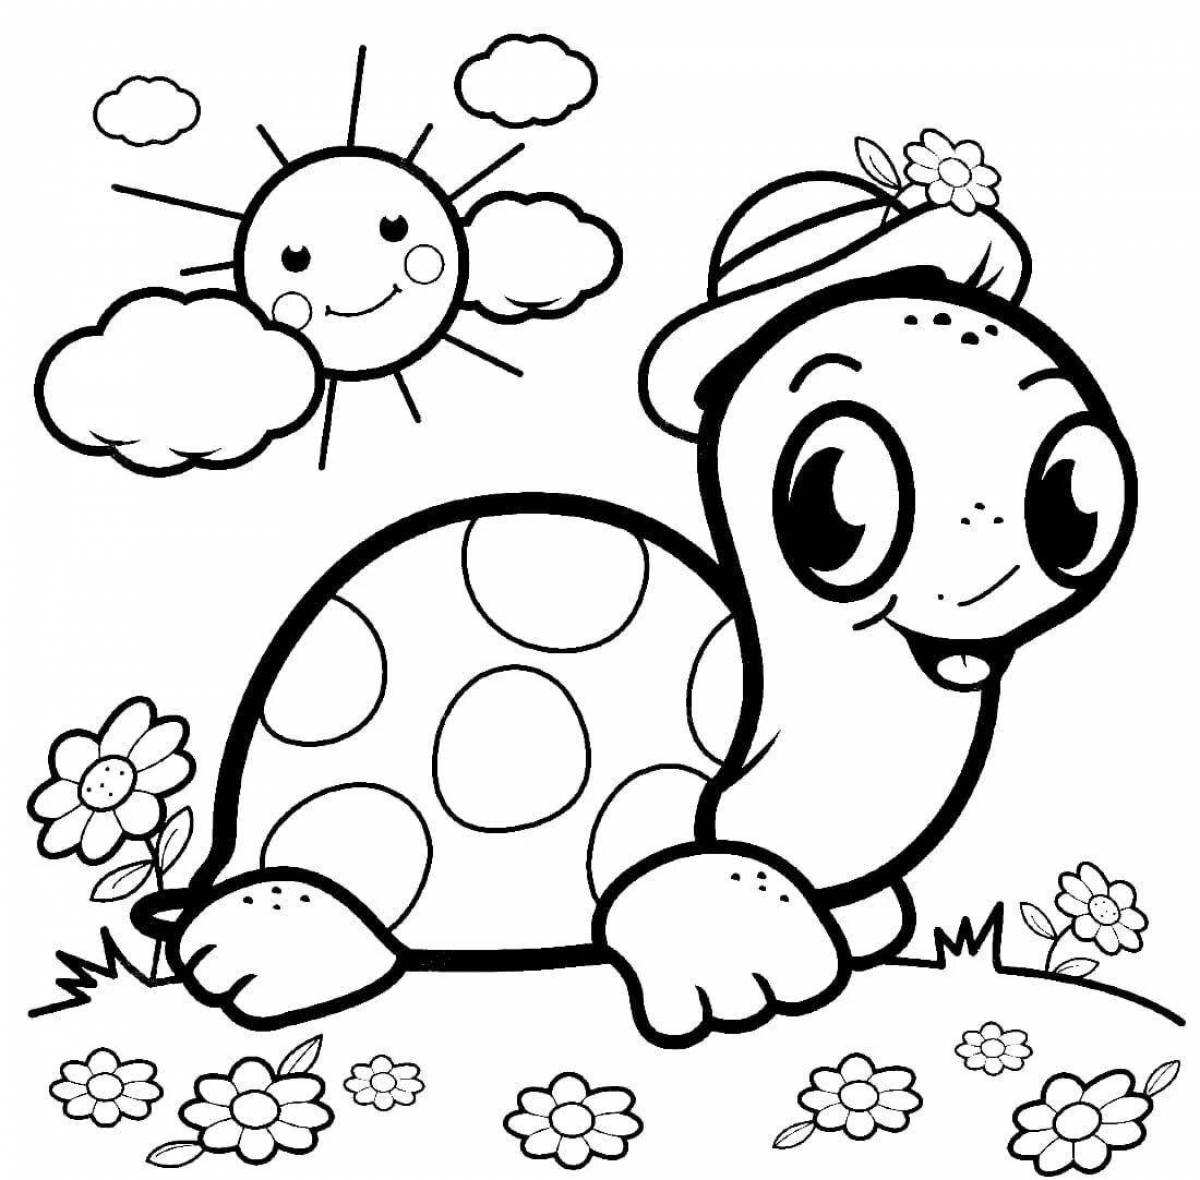 Увлекательная раскраска черепахи для детей 3-4 лет